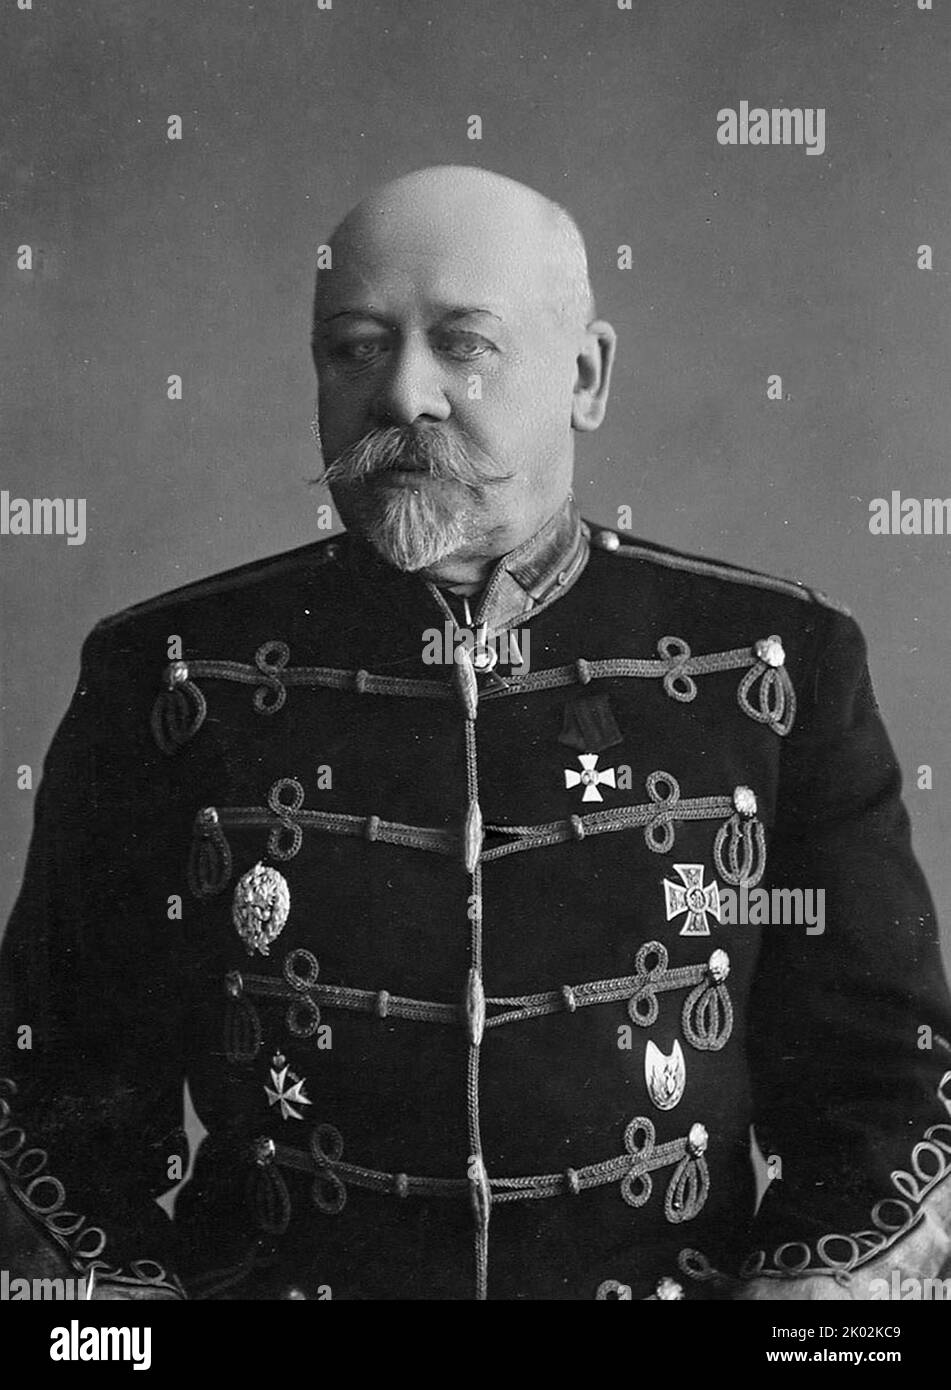 Wladimir Alexandrowitsch Suchomlinow (1848 - 1926) der russische General der kaiserlichen russischen Armee, der von 1908 bis 1909 als Generalstabschef und von 1909 bis 1915 als Kriegsminister fungierte. Suchomlinow wurde wegen Hochverrats, Korruption und Machtmissbrauch angeklagt Stockfoto